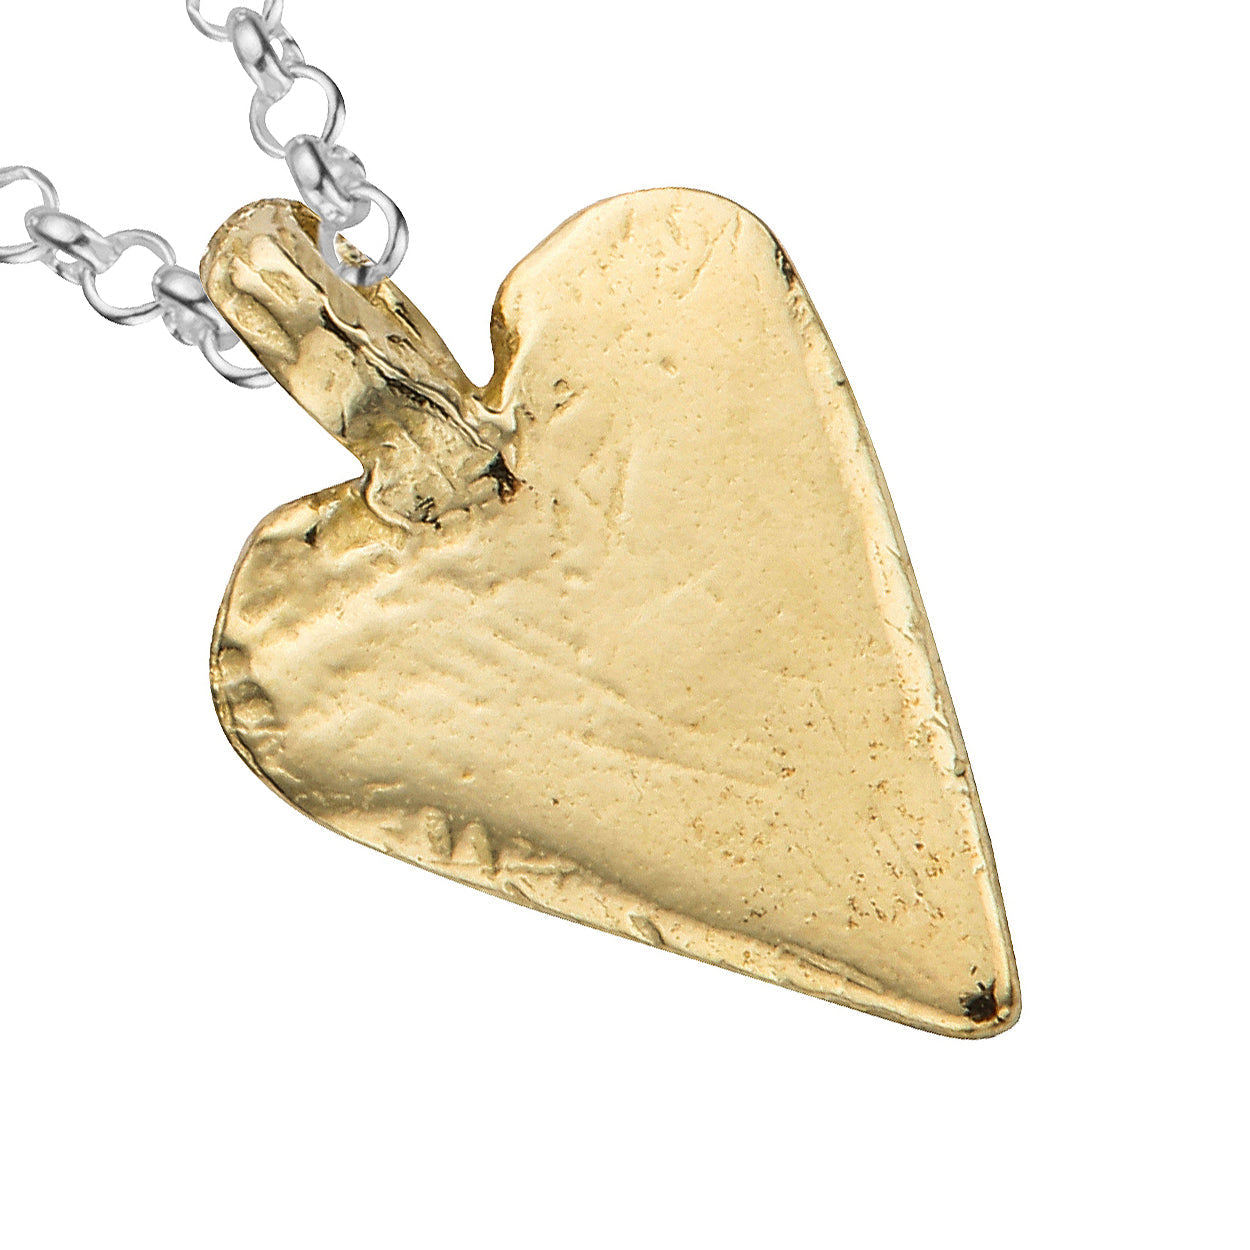 Silver & Gold Midi Heart Necklace